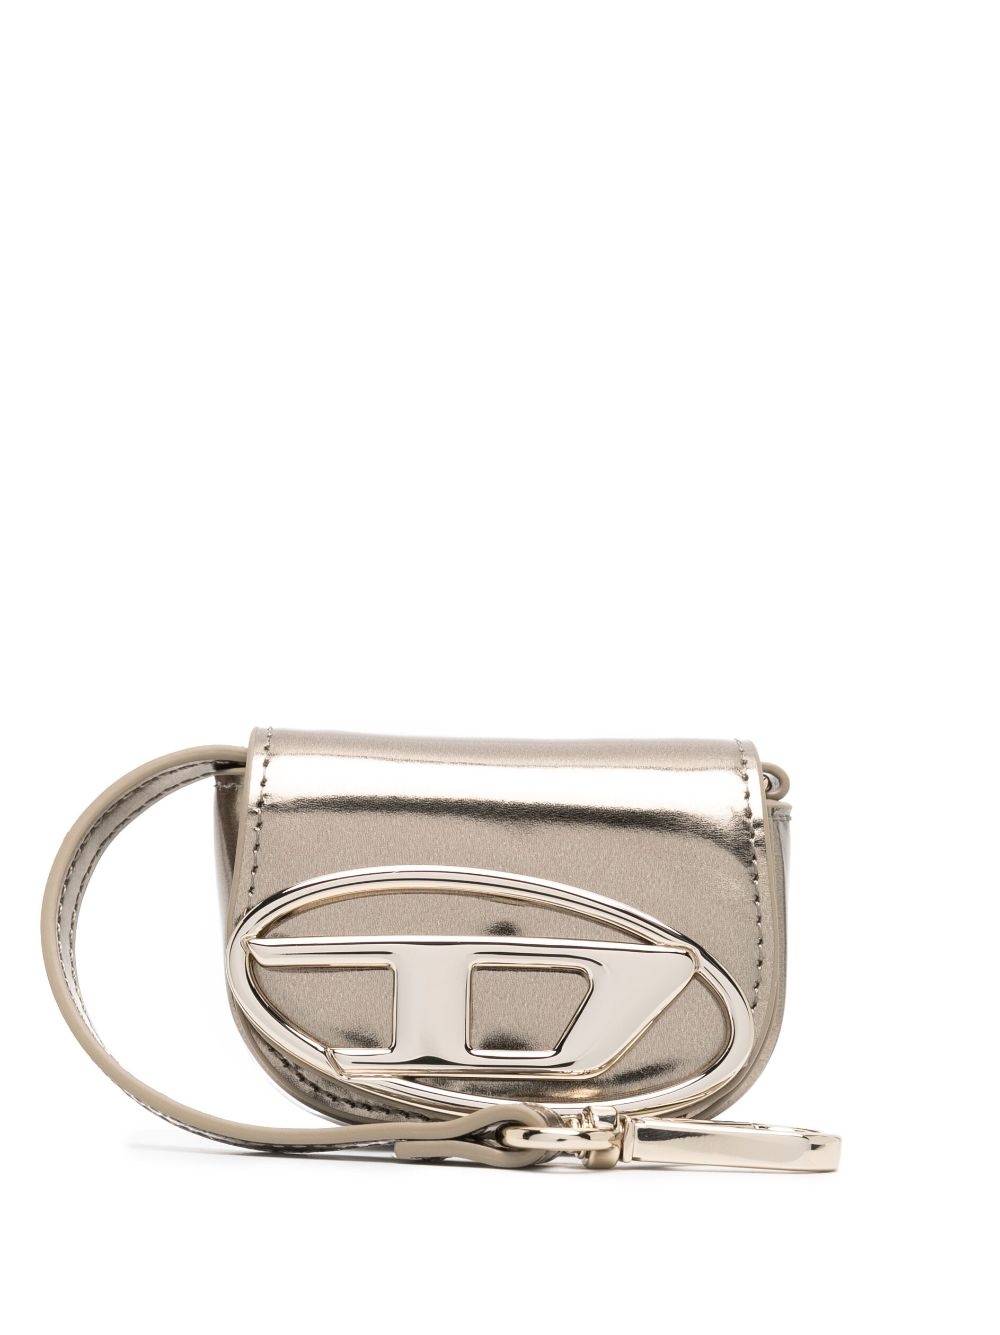 1DR XXS leather purse - 1